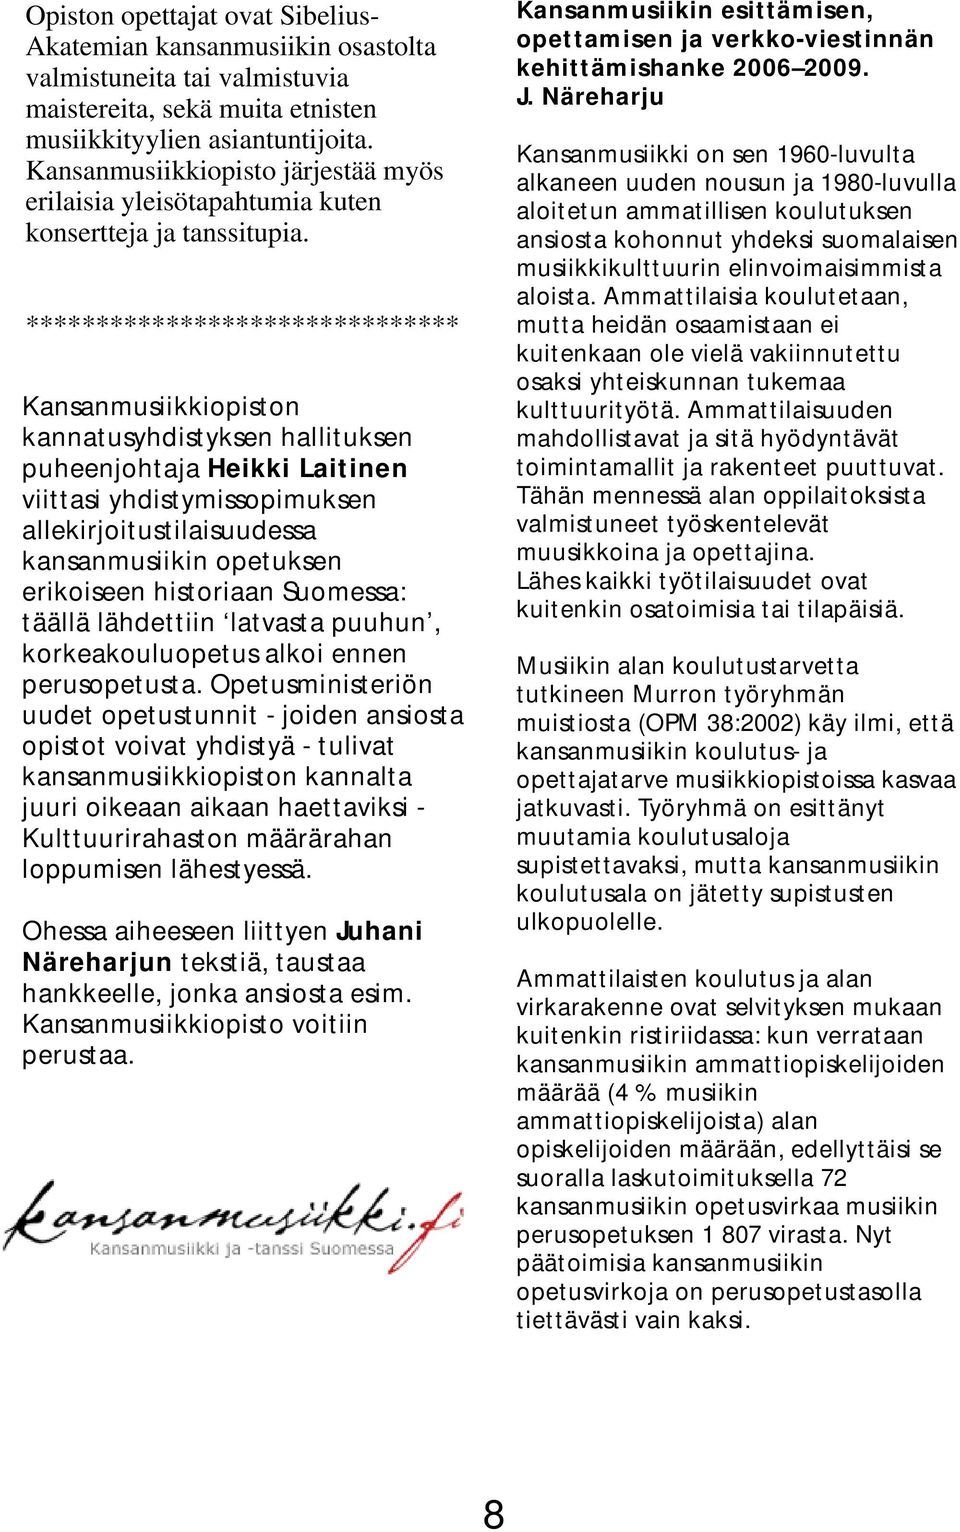 ******************************* Kansanmusiikkiopiston kannatusyhdistyksen hallituksen puheenjohtaja Heikki Laitinen viittasi yhdistymissopimuksen allekirjoitustilaisuudessa kansanmusiikin opetuksen